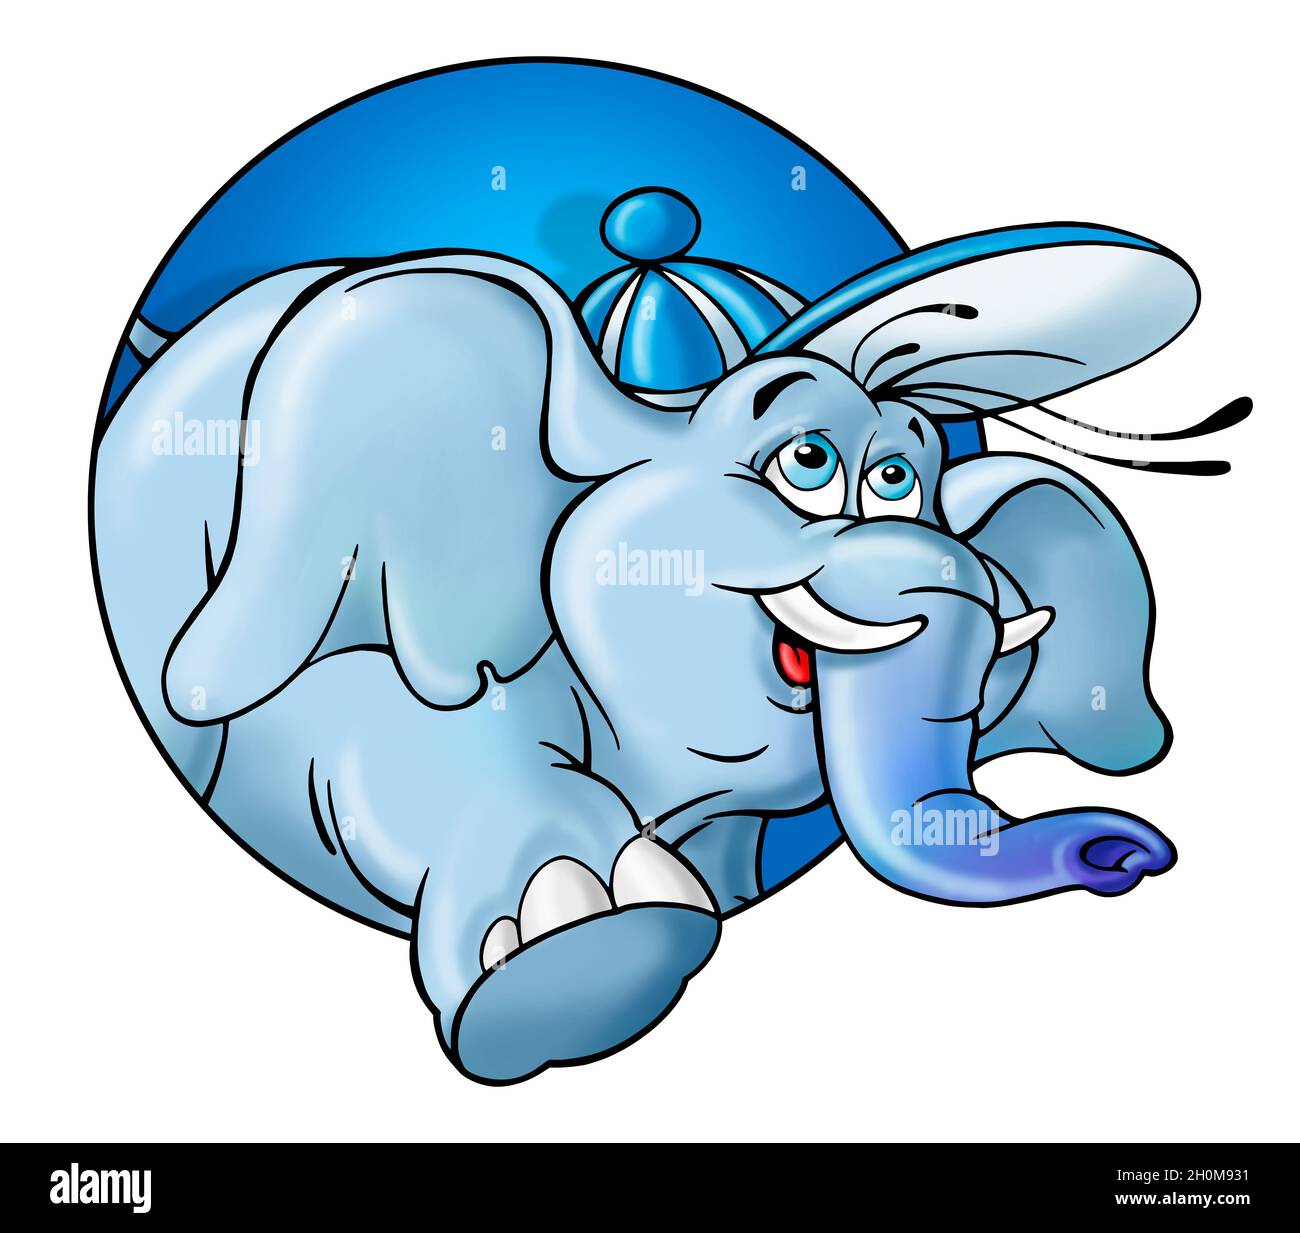 Dessin d'un éléphant bleu souriant, mascotte, personnage de dessin animé Banque D'Images